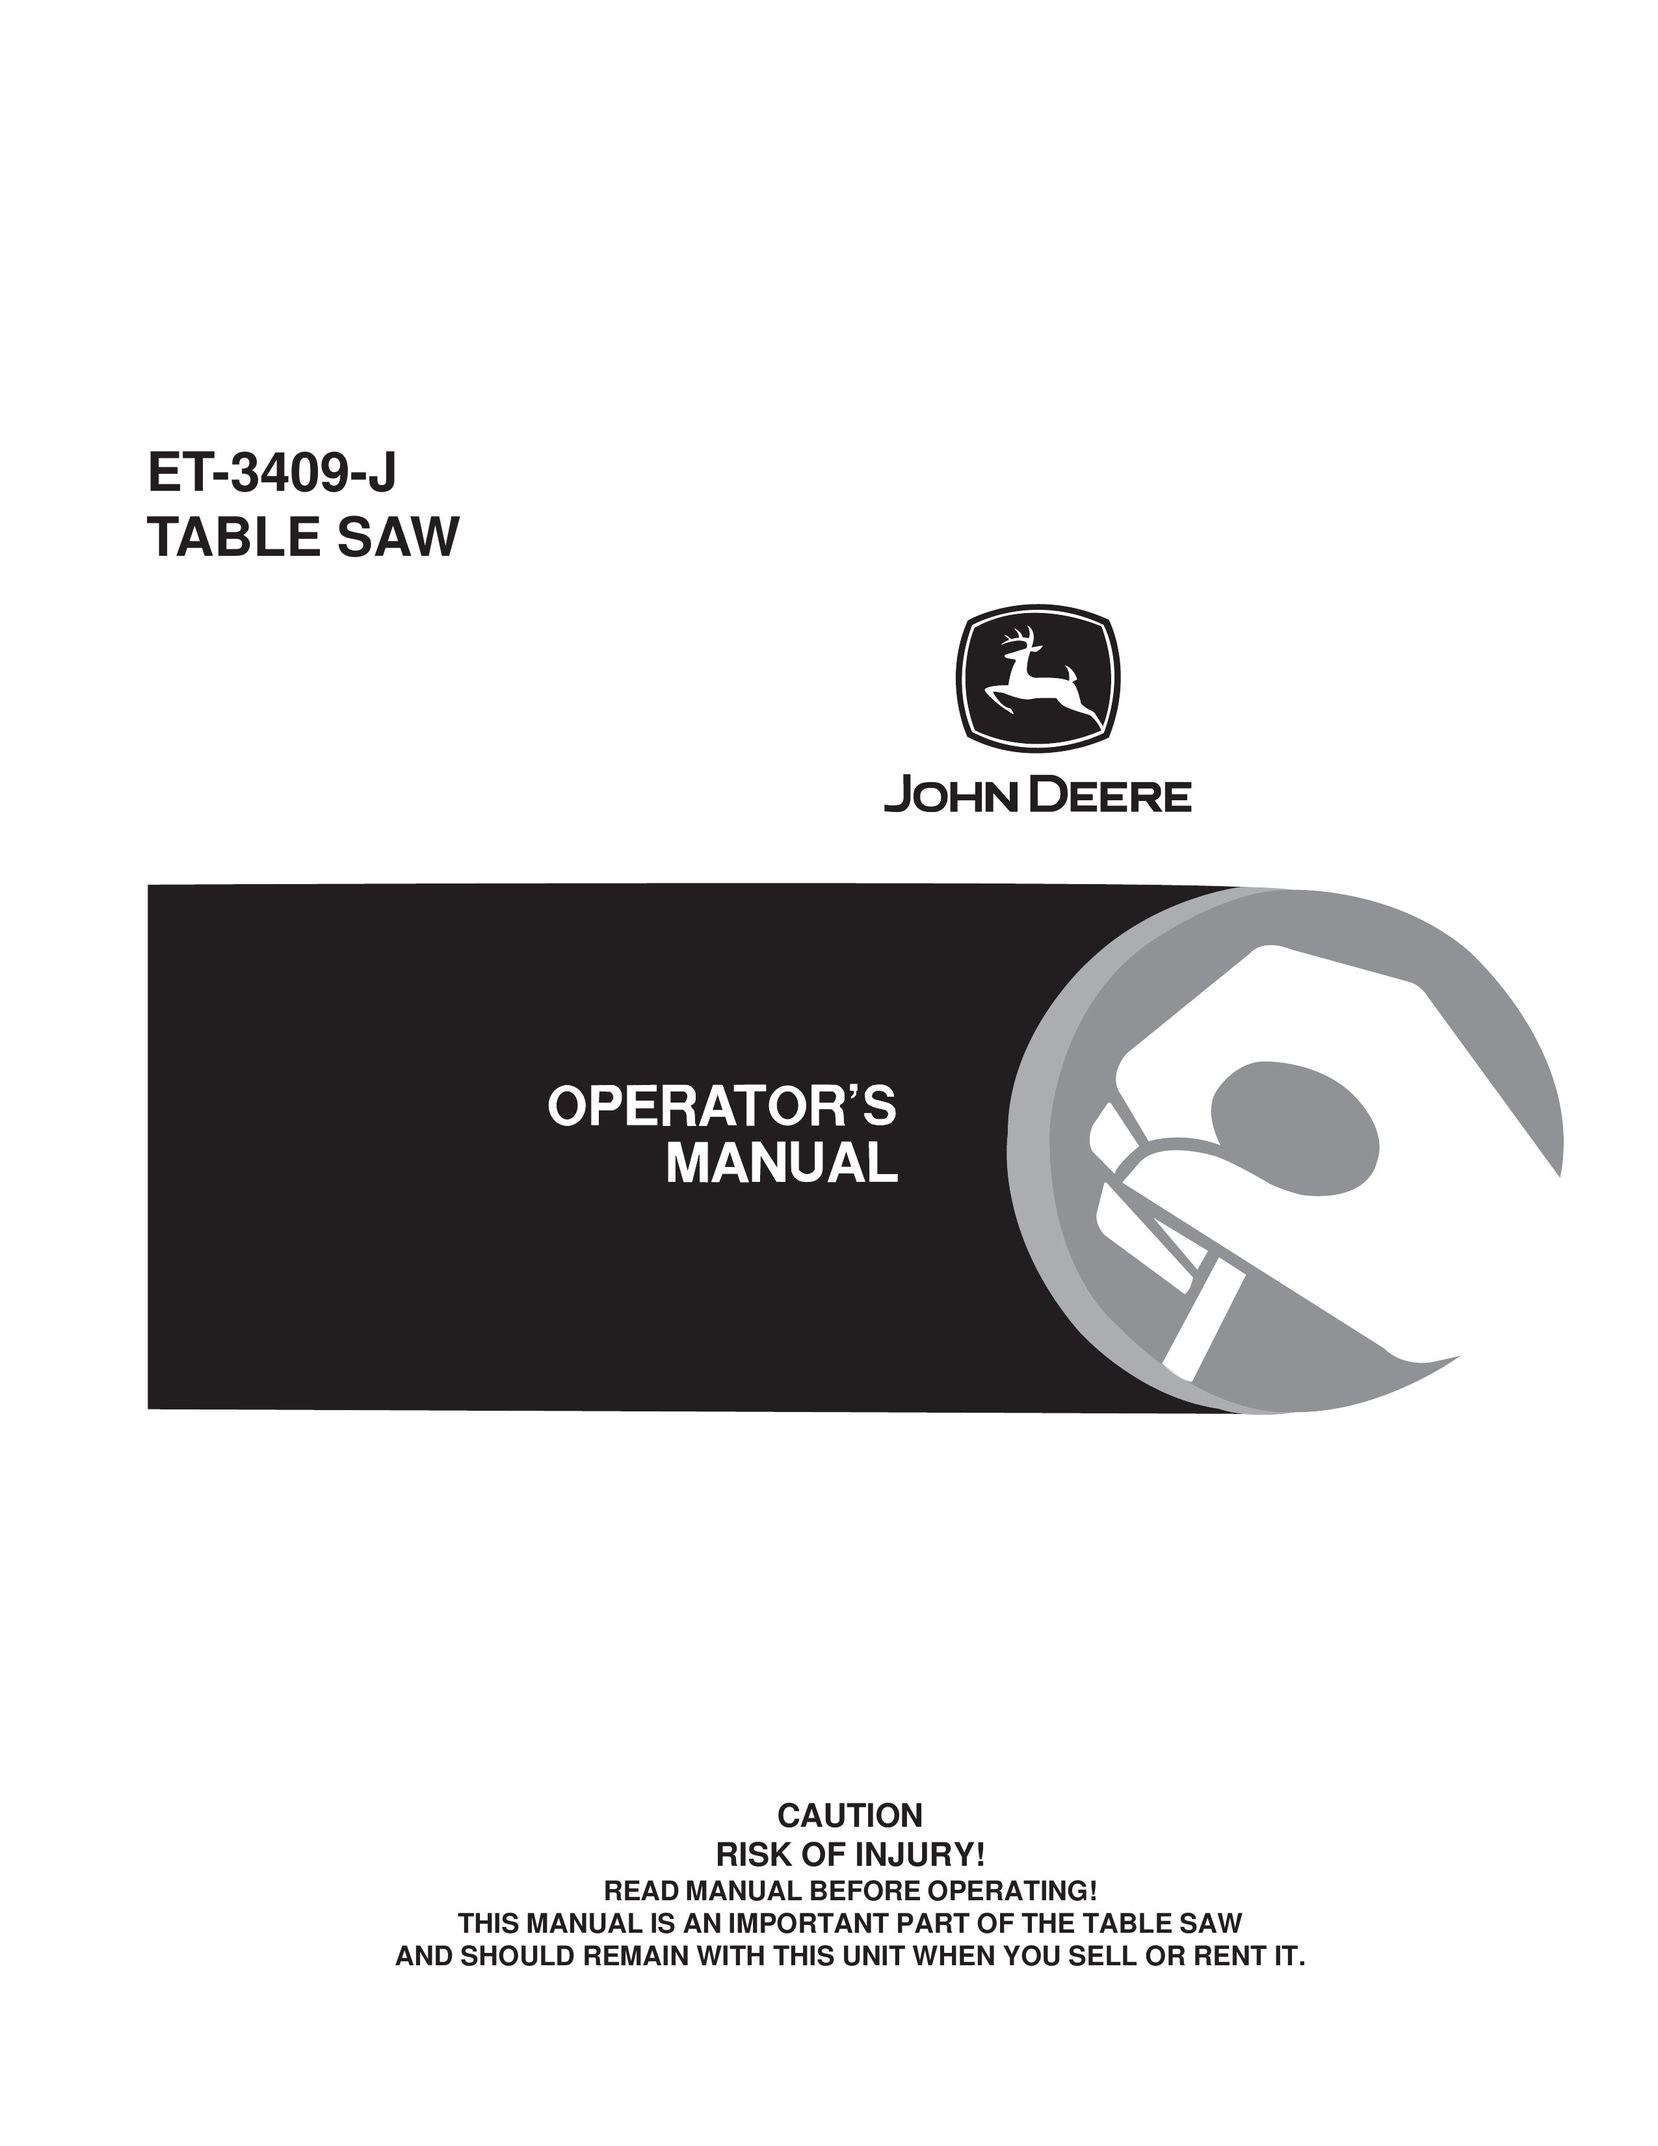 John Deere ET-3409-J Saw User Manual